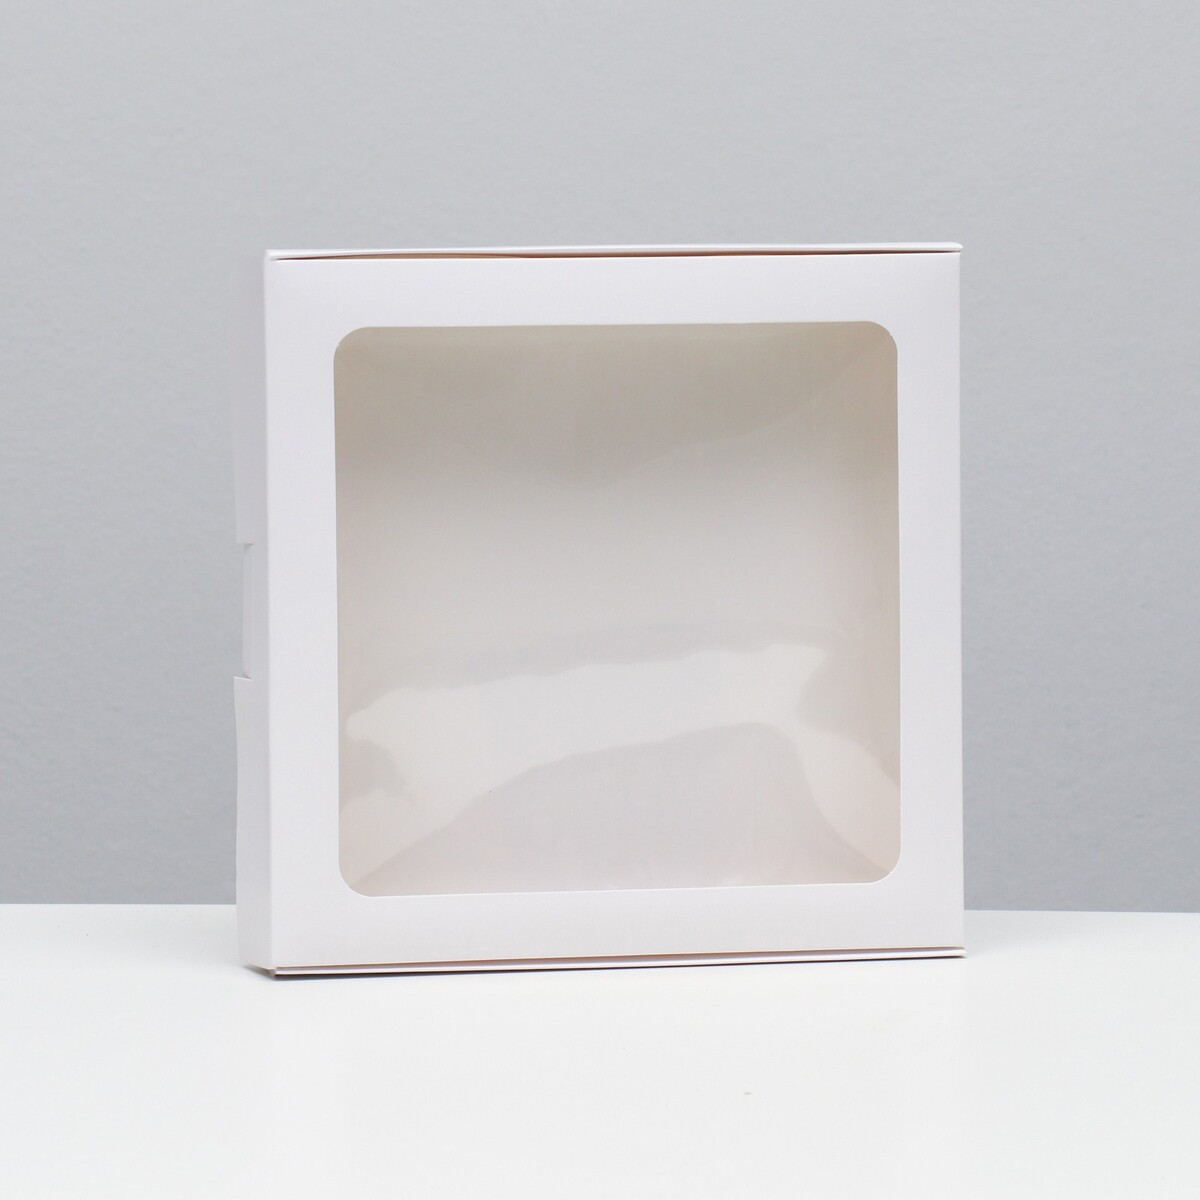 Коробка самосборная, белая, 21 х 21 х 3 см коробка самосборная дед мороз 11 х 8 х 2 см